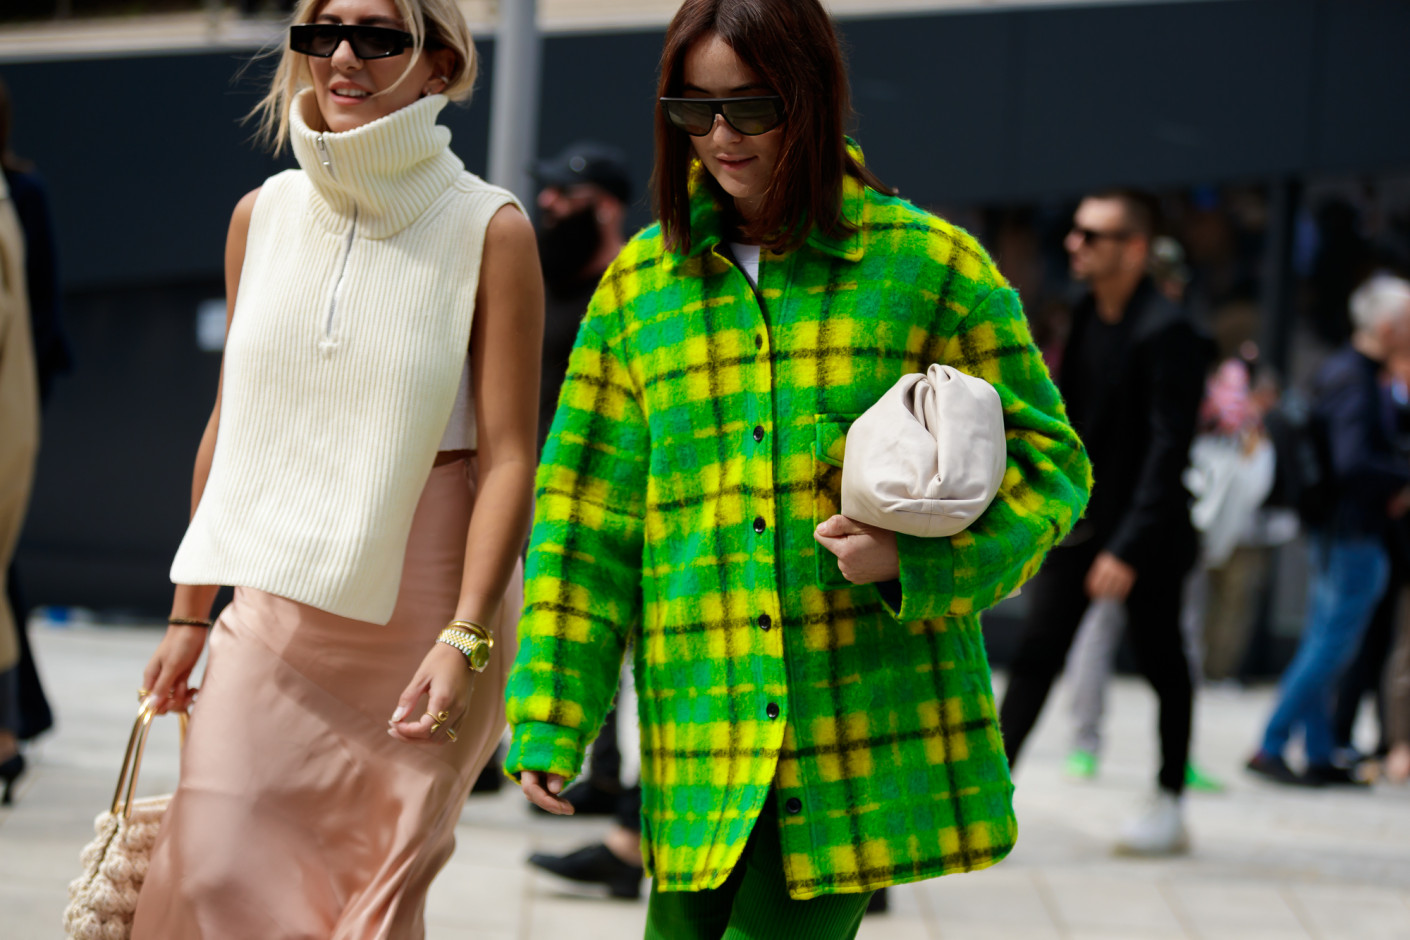 Milan Fashion Week Spring 2020 Street Style Looks - Coveteur